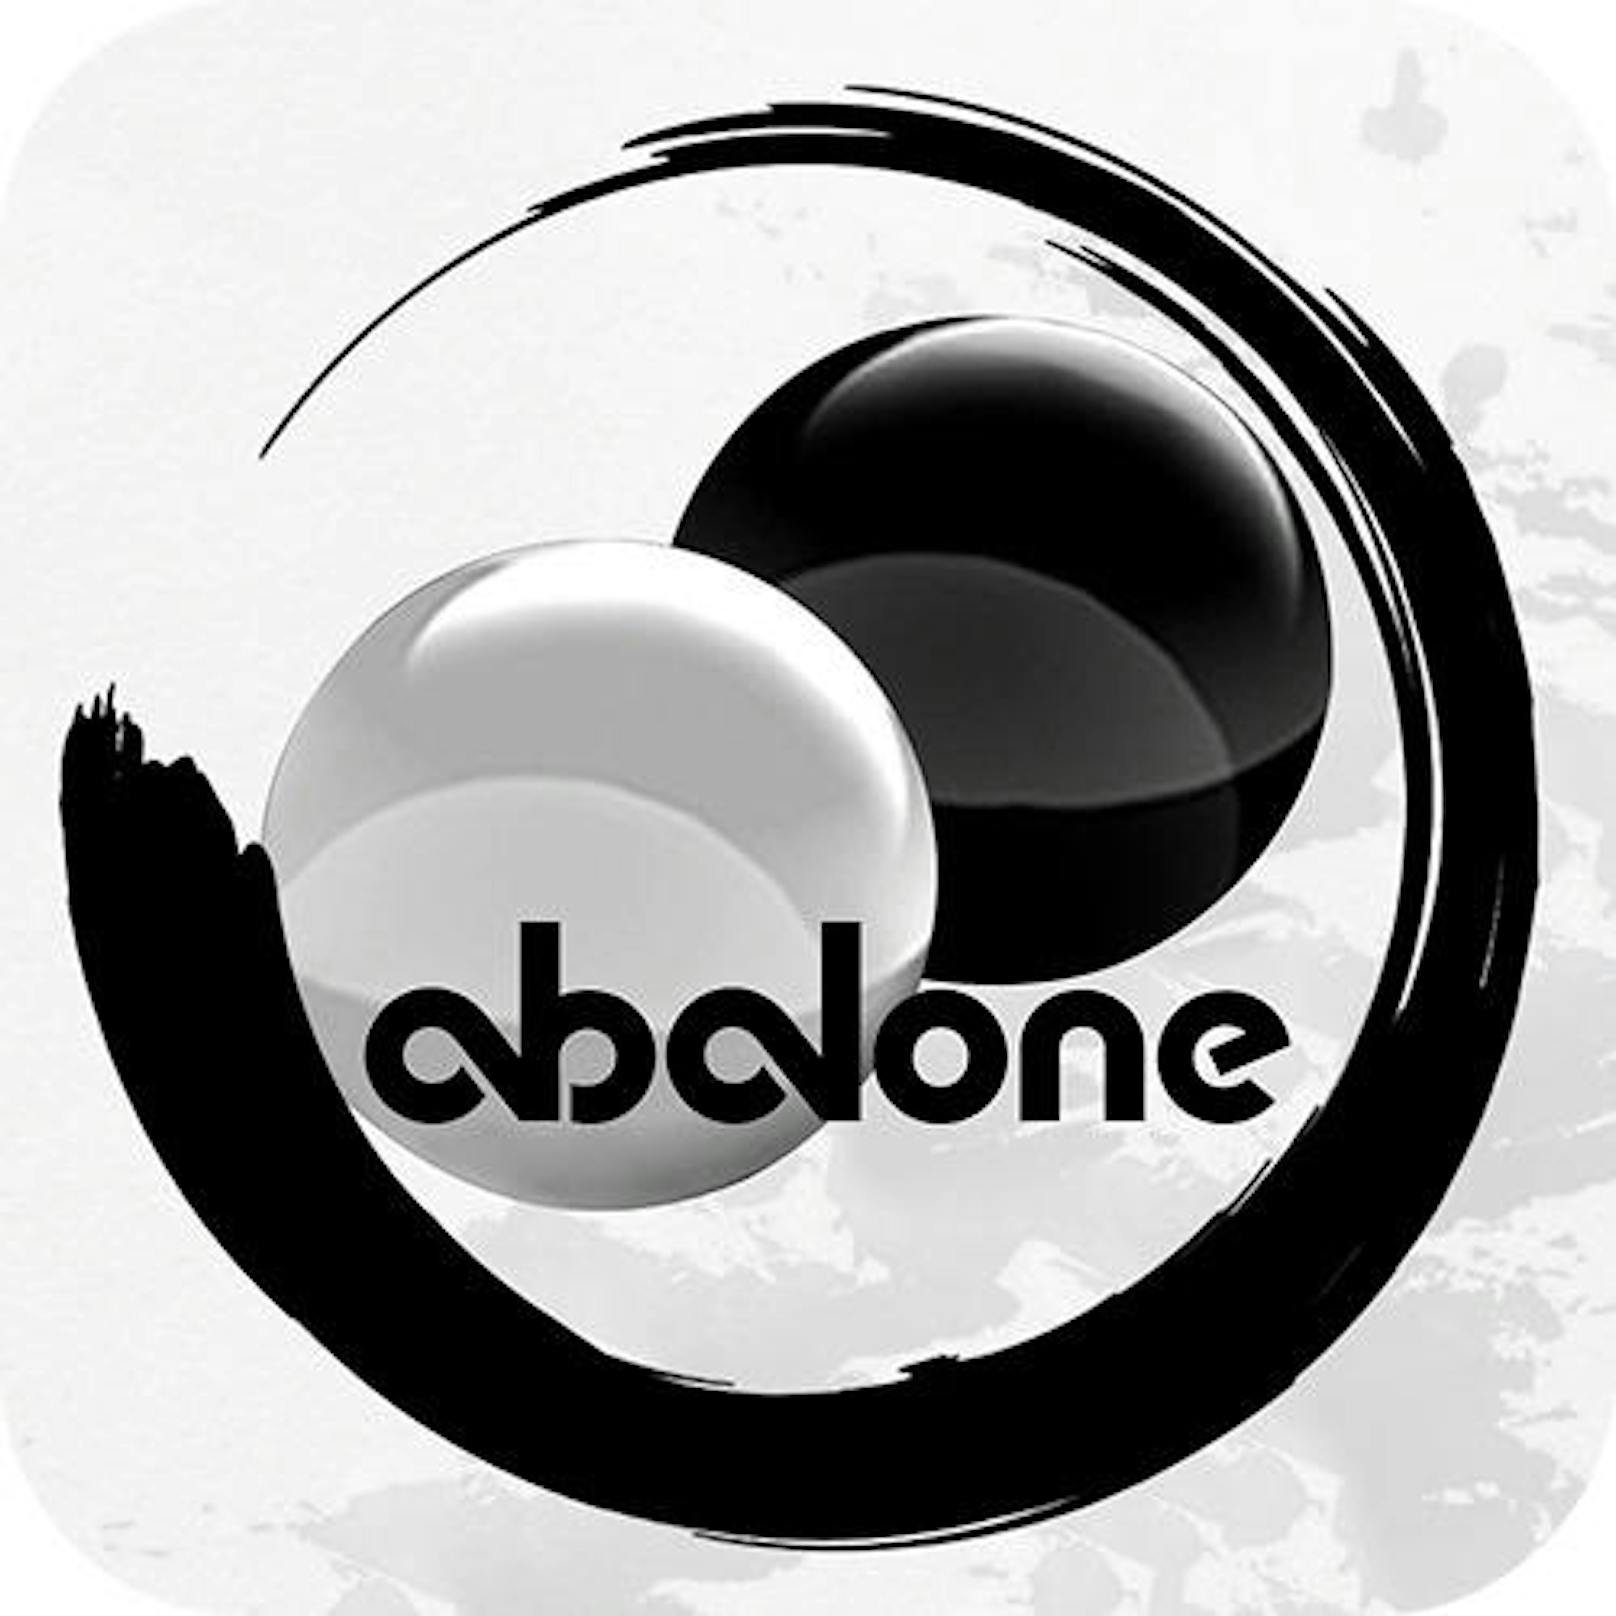 Abalone (FoxMind) - PC via Steam - erscheint im vierten Quartal 2017. Das ansprechende Strategiespiel wurde mit dem Mensa Select Preis ausgezeichnet, wird nun erstmals als MultiplayerOnline-Spiel herauskommen.